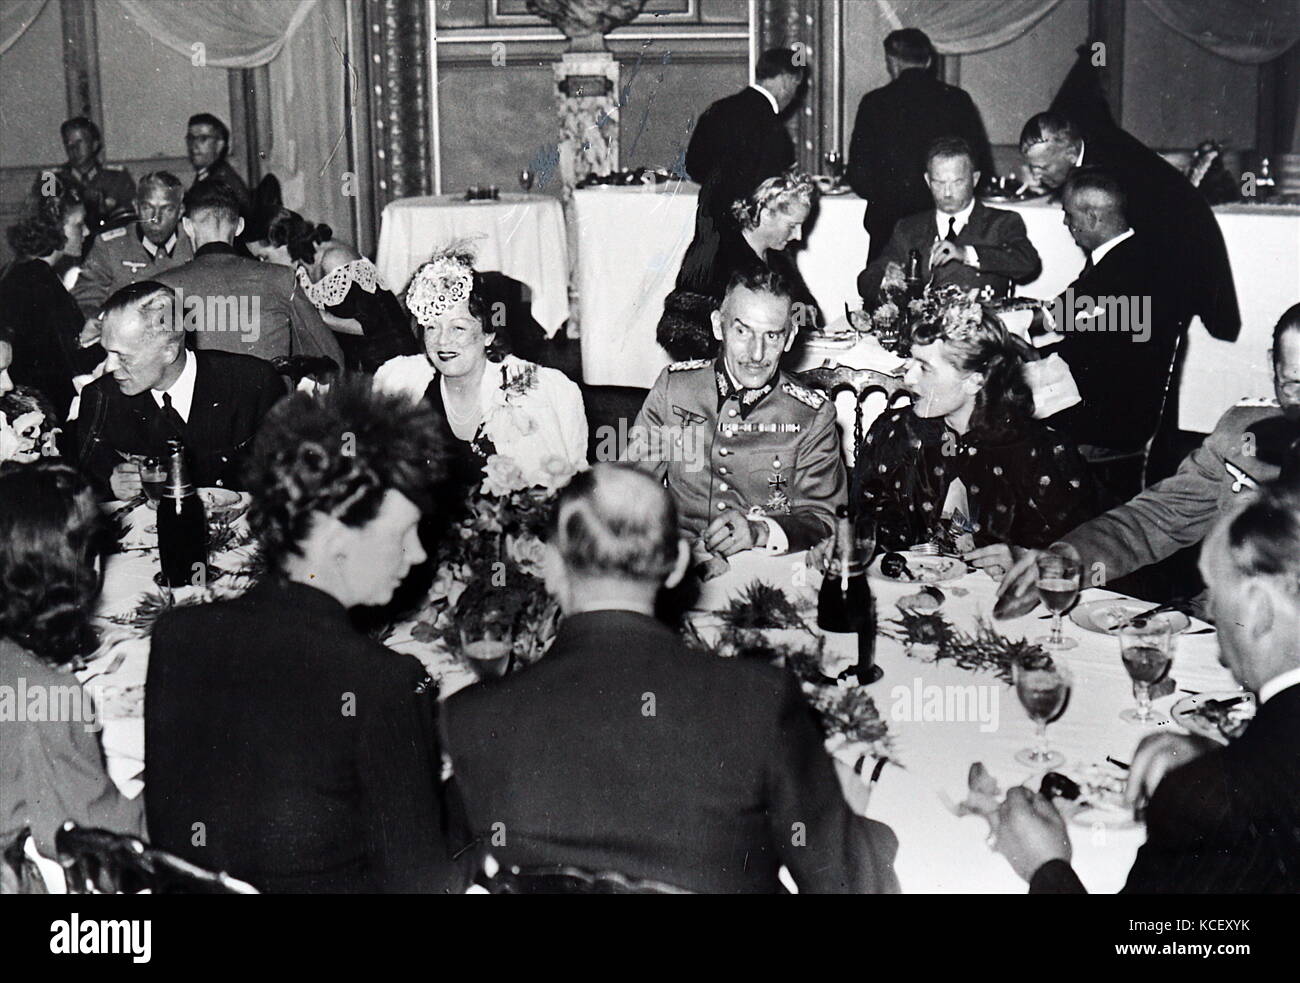 Photograph of Carl-Heinrich von Stülpnagel having dinner at the Paris Opera house. Carl-Heinrich von Stülpnagel (1886 – 1944) German general and military commander of German-occupied France. Dated 20th Century Stock Photo